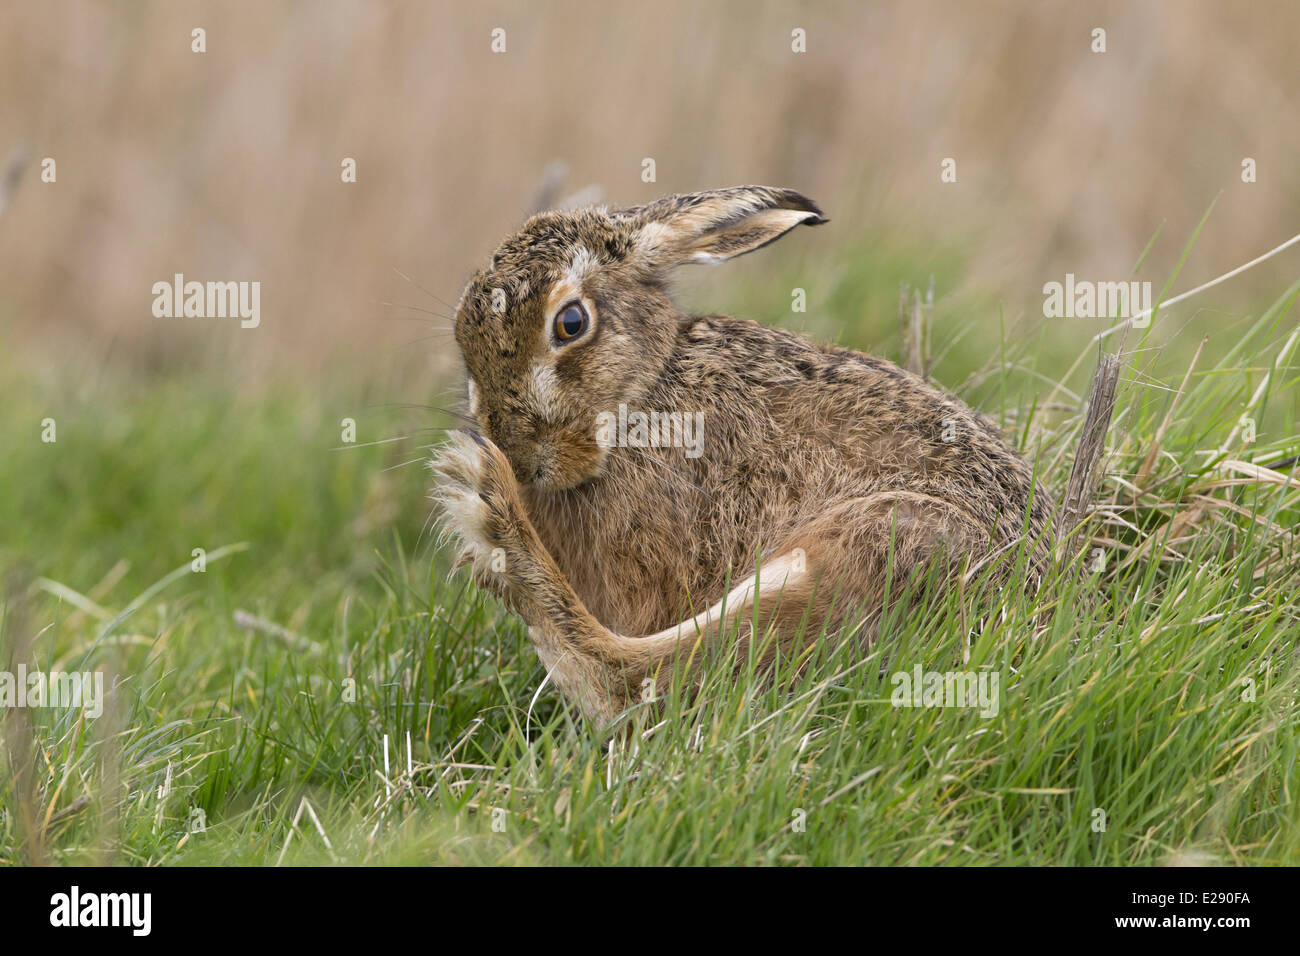 Unione lepre (Lepus europaeus) adulto, toelettatura hind piede, seduta in campo in erba, Suffolk, Inghilterra, Marzo Foto Stock